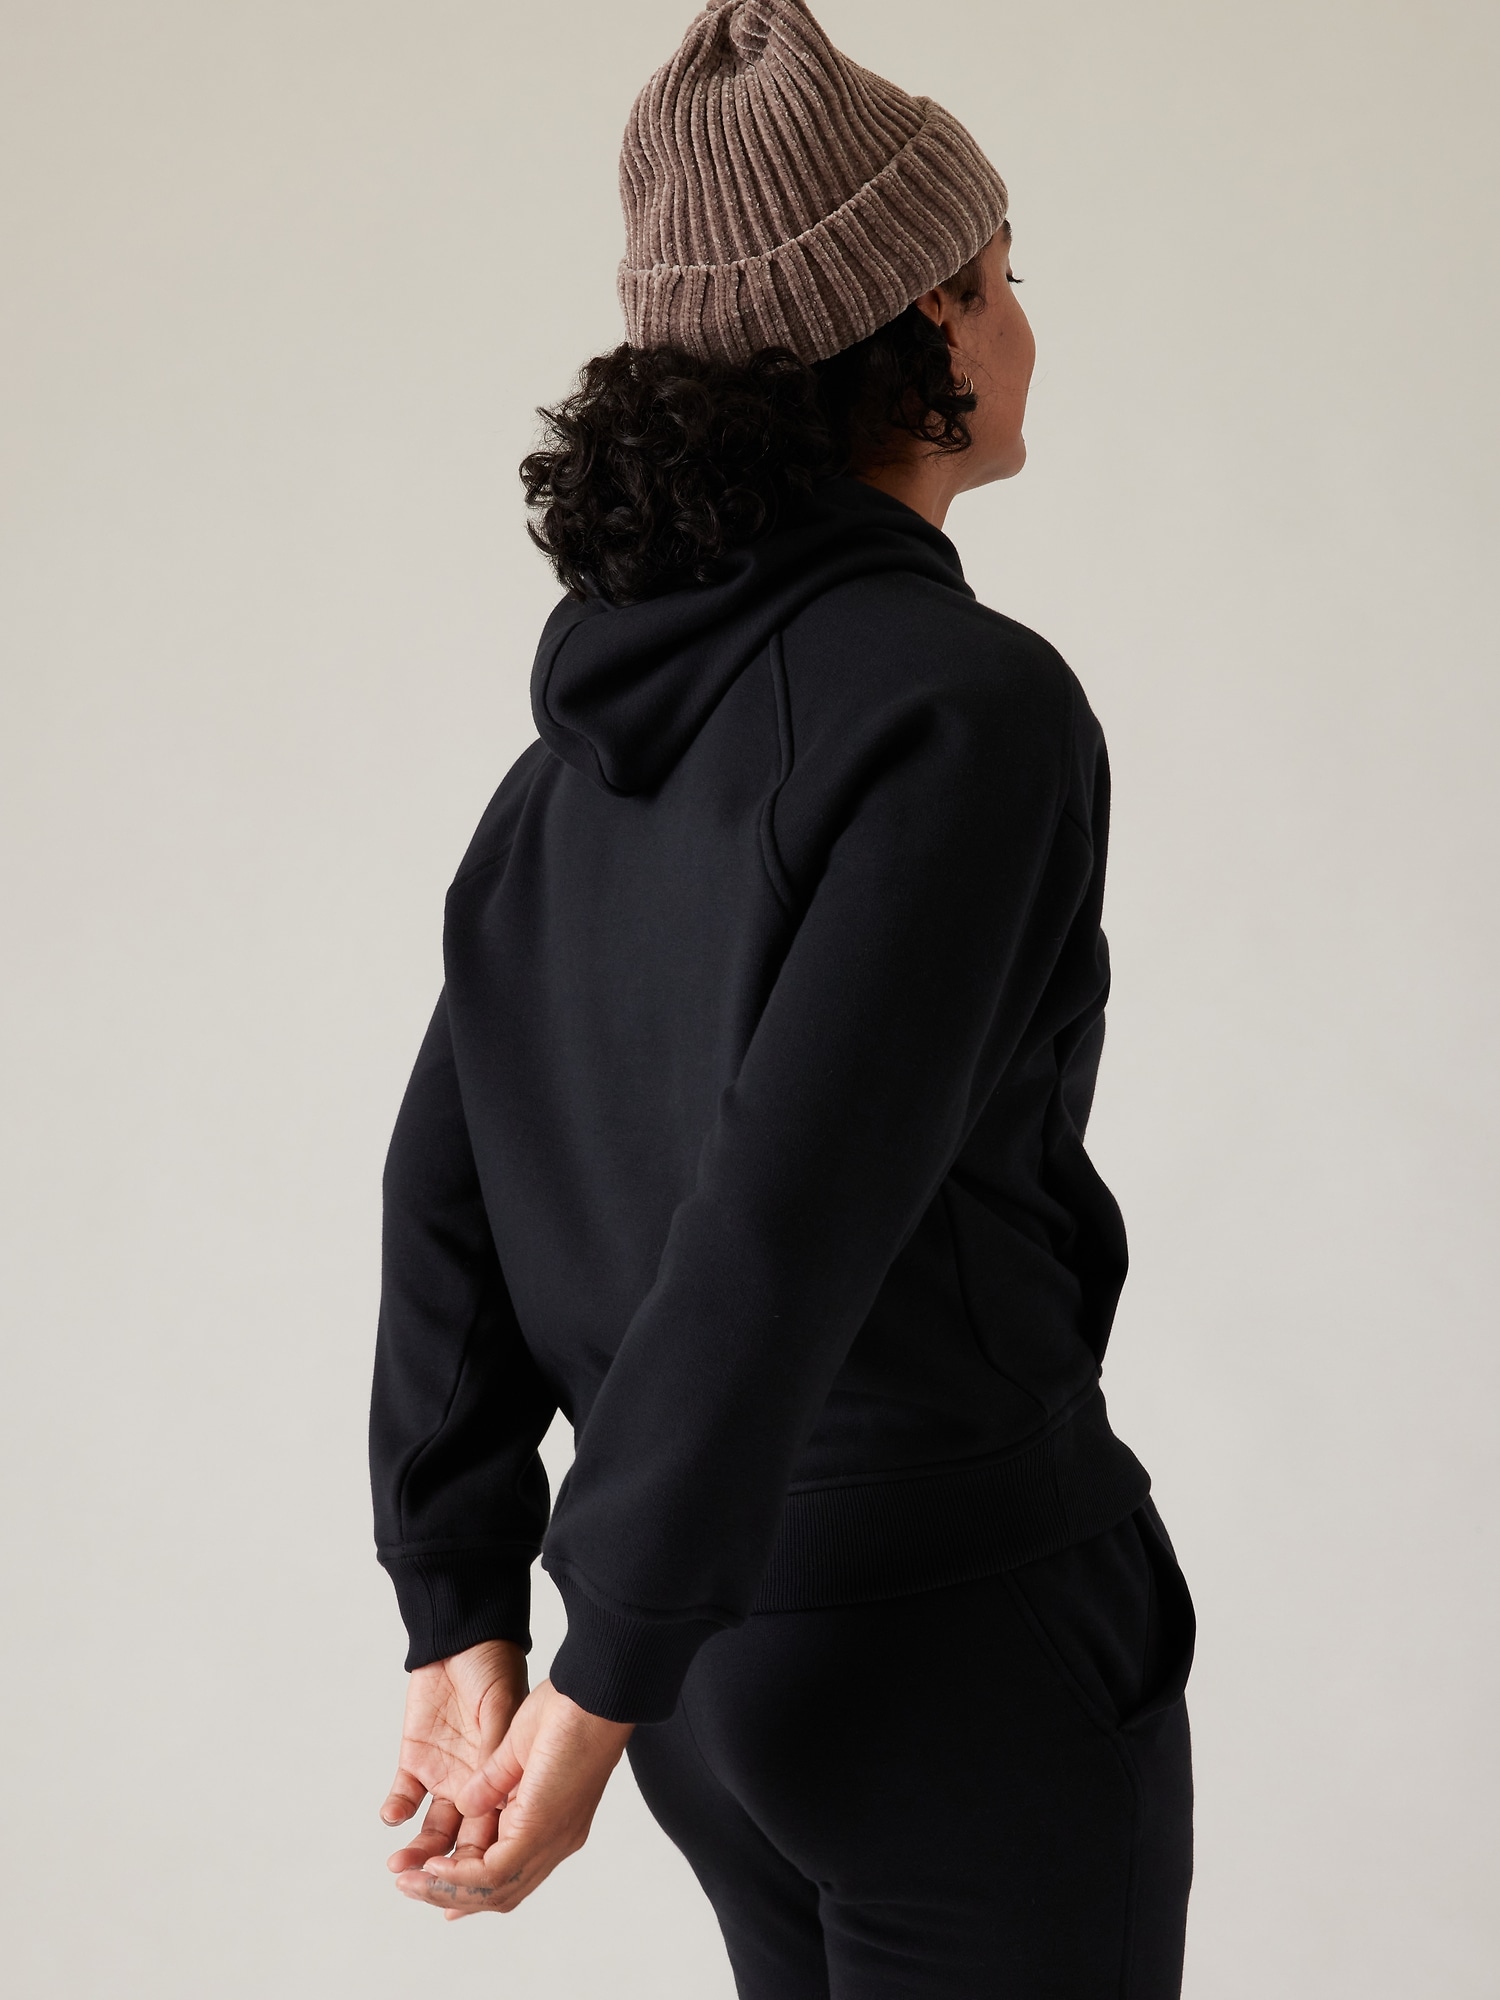 In Stores: Karma Kurmasana Sweater + Drop It Like It's Hot Capsule